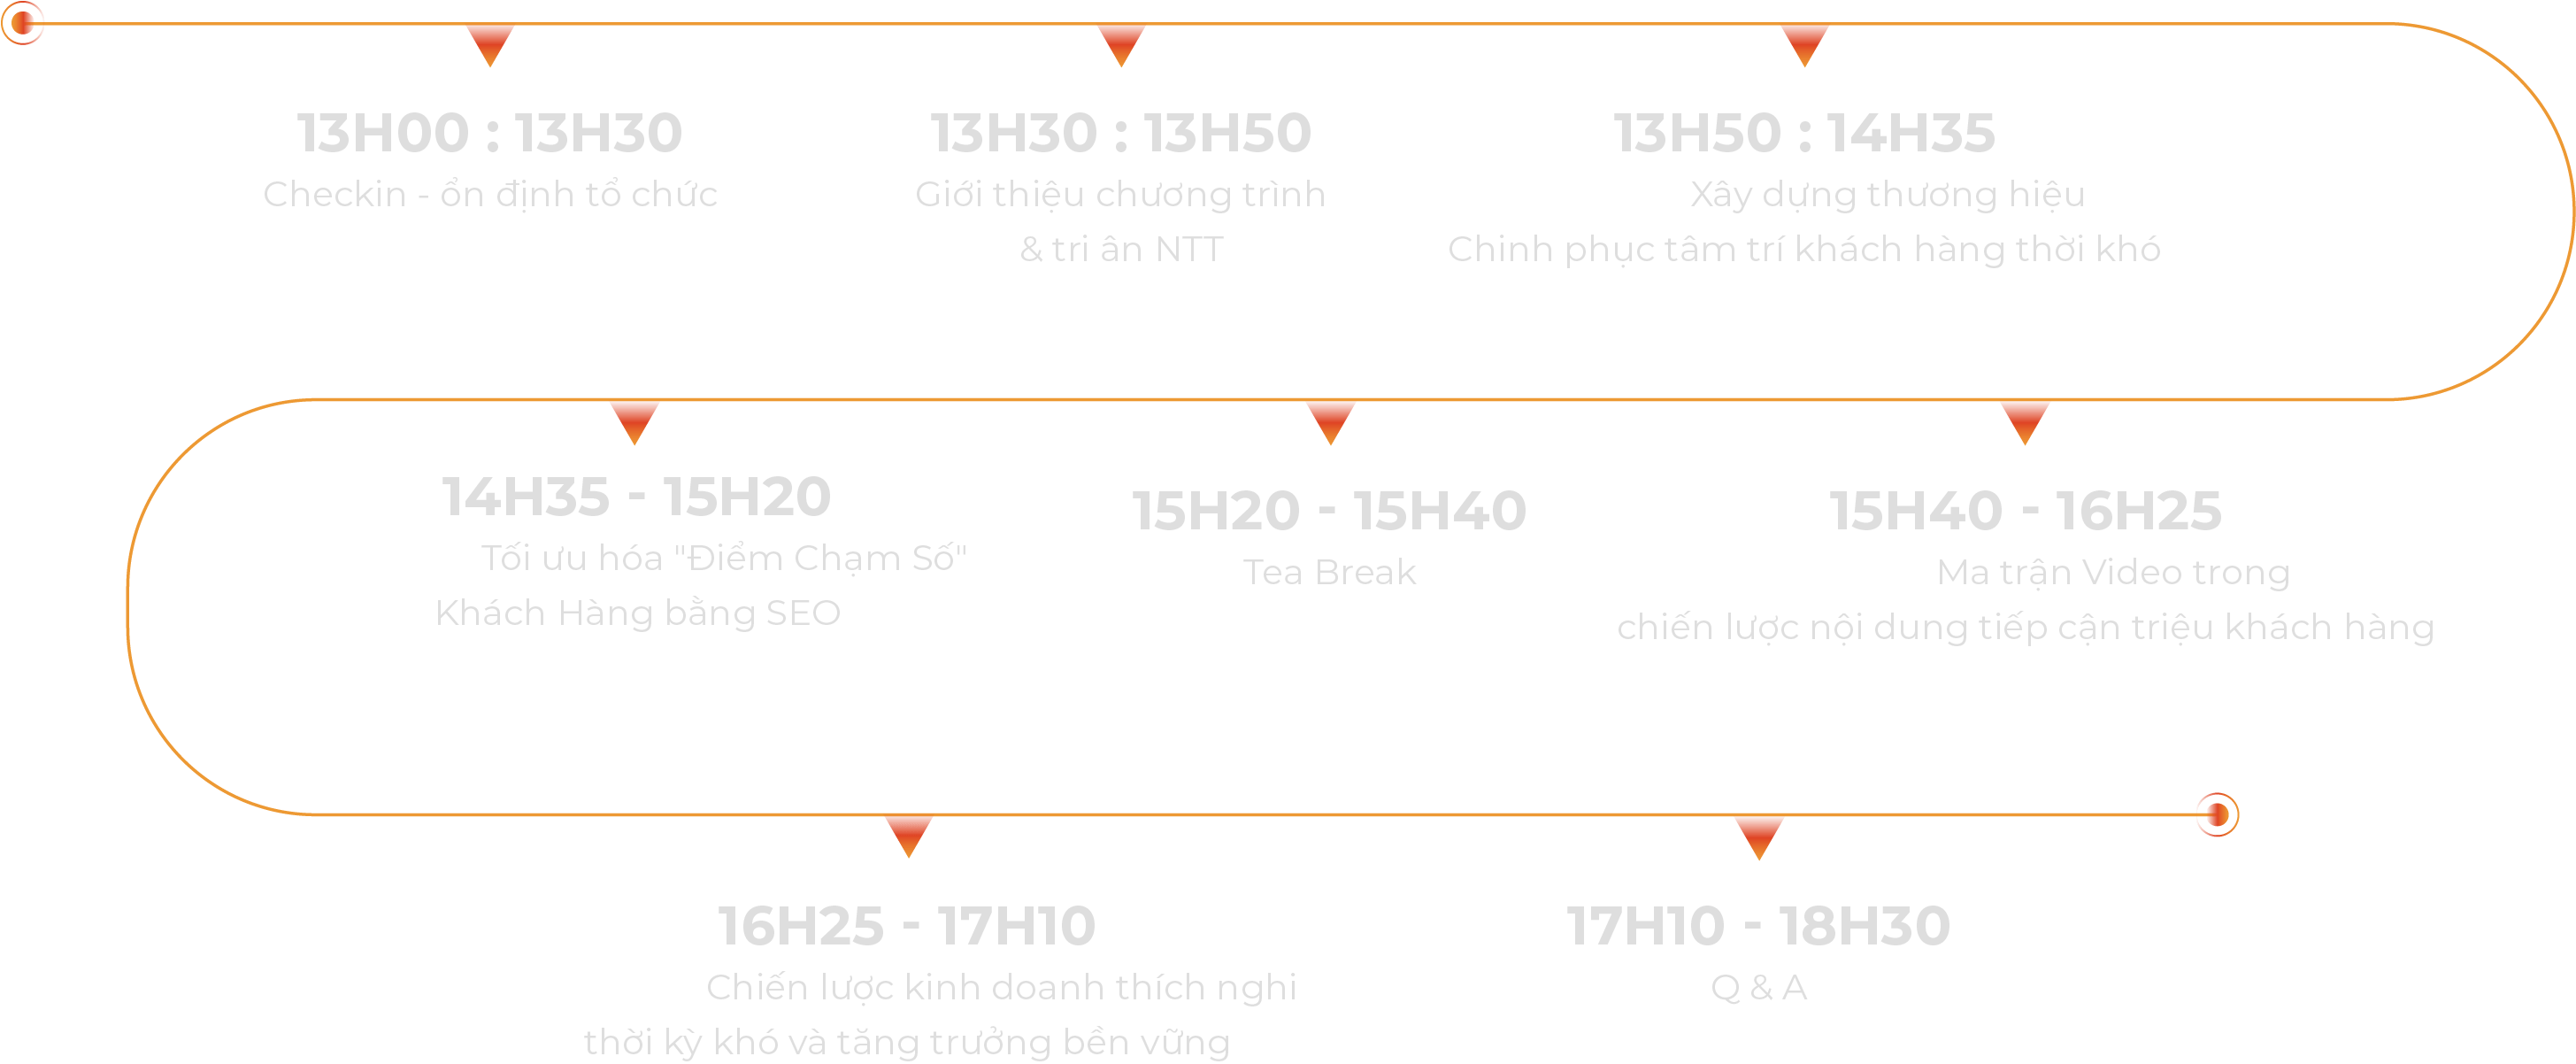 agenda-event